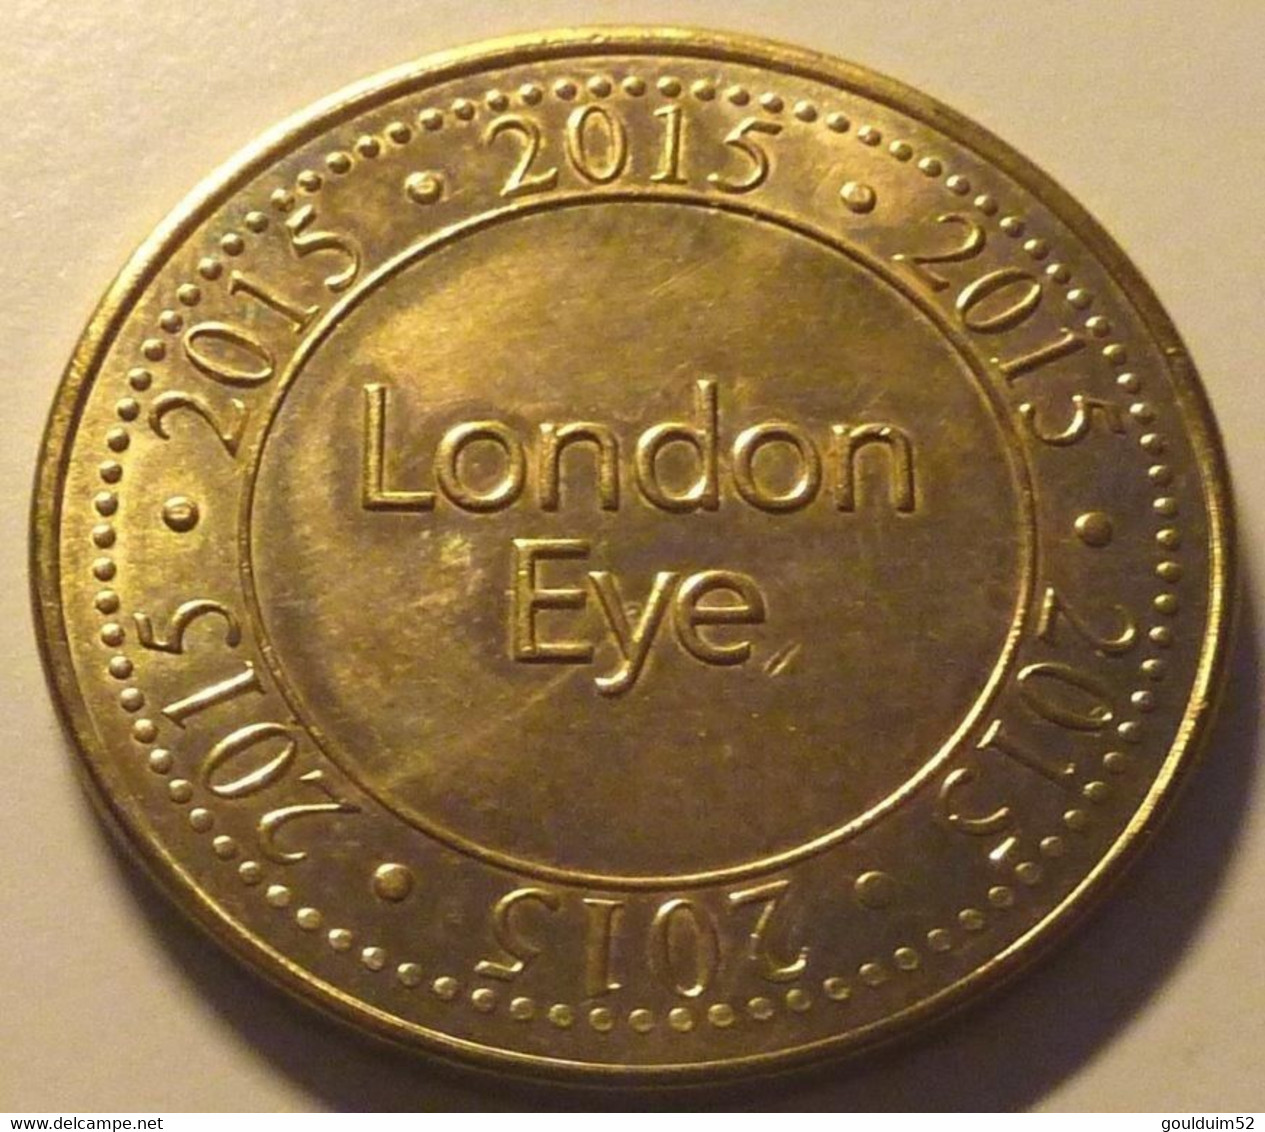 London : Eye - Profesionales/De Sociedad